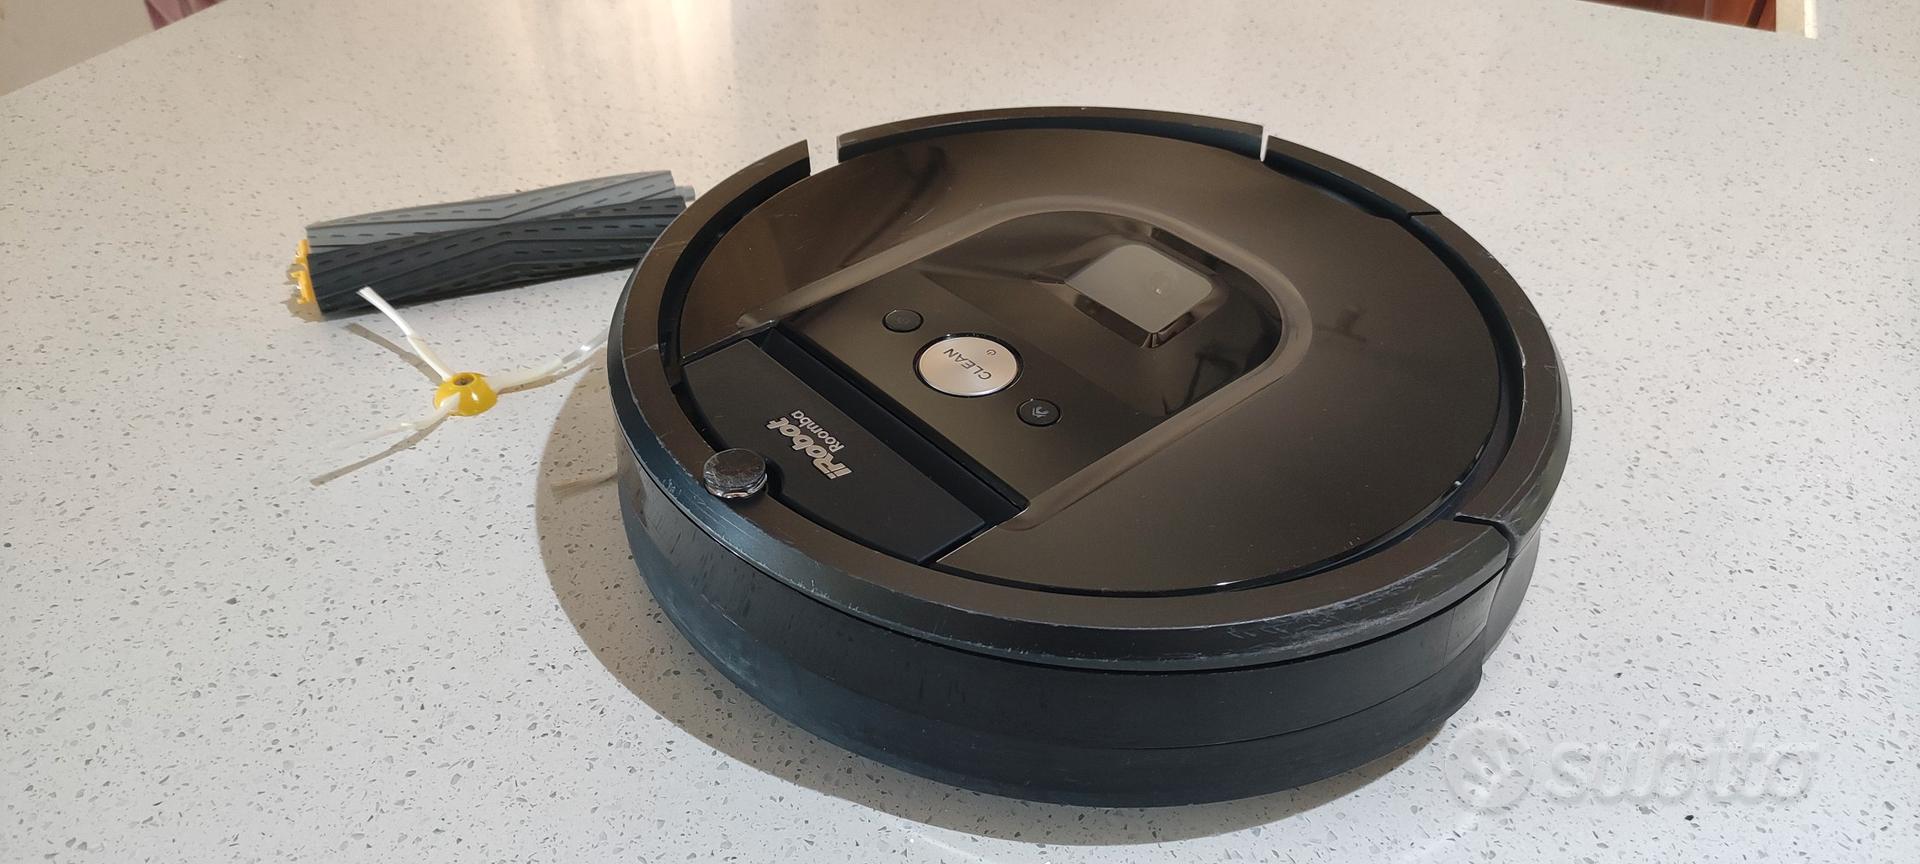 iRobot Roomba 980 con ricambi Originali - Elettrodomestici In